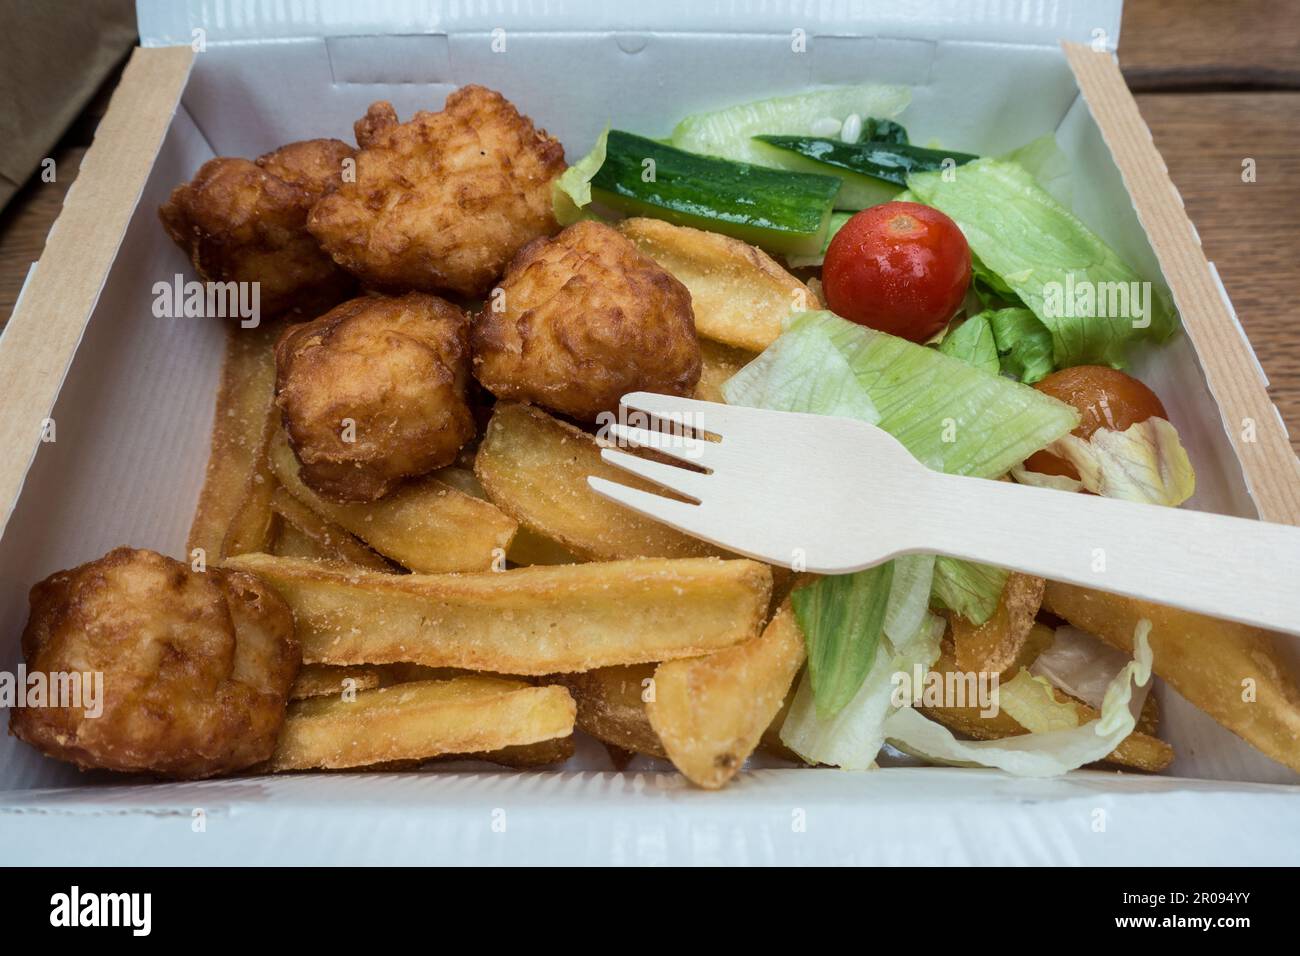 Repas de nuggets de poulet pour enfants dans une boîte avec fourchette en bois Banque D'Images